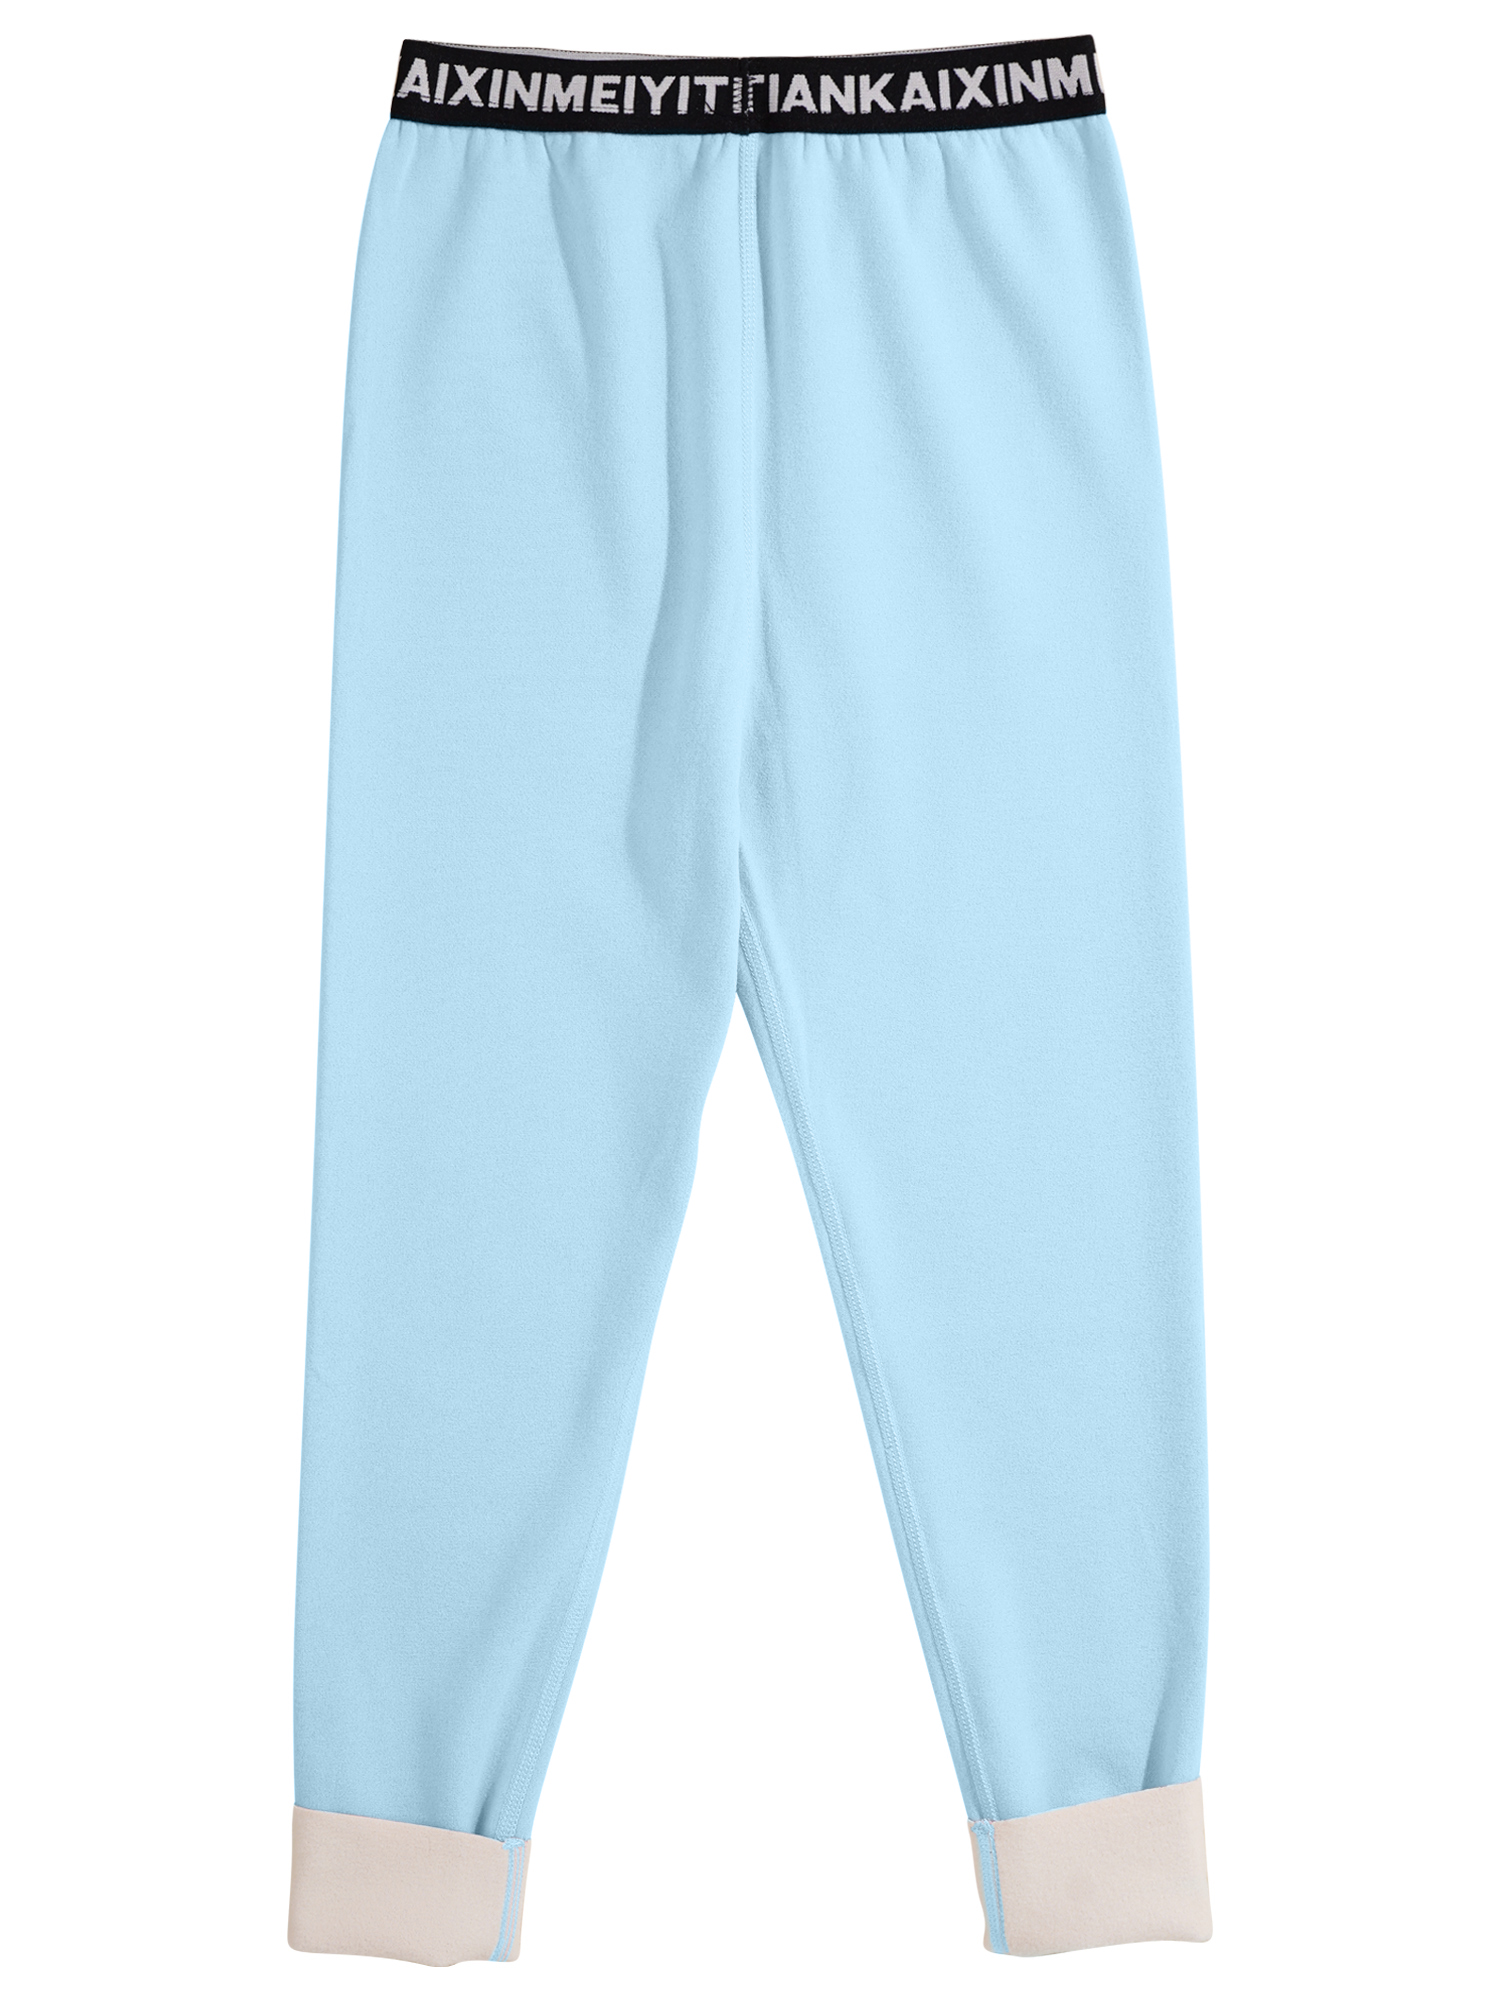 Dziewczęta Dziewczyny Chłopcy termiczne spodnie termiczne drukowanie elastyczne legginsy w pasie Mid talii ciepłe spodnie jesienne spodnie